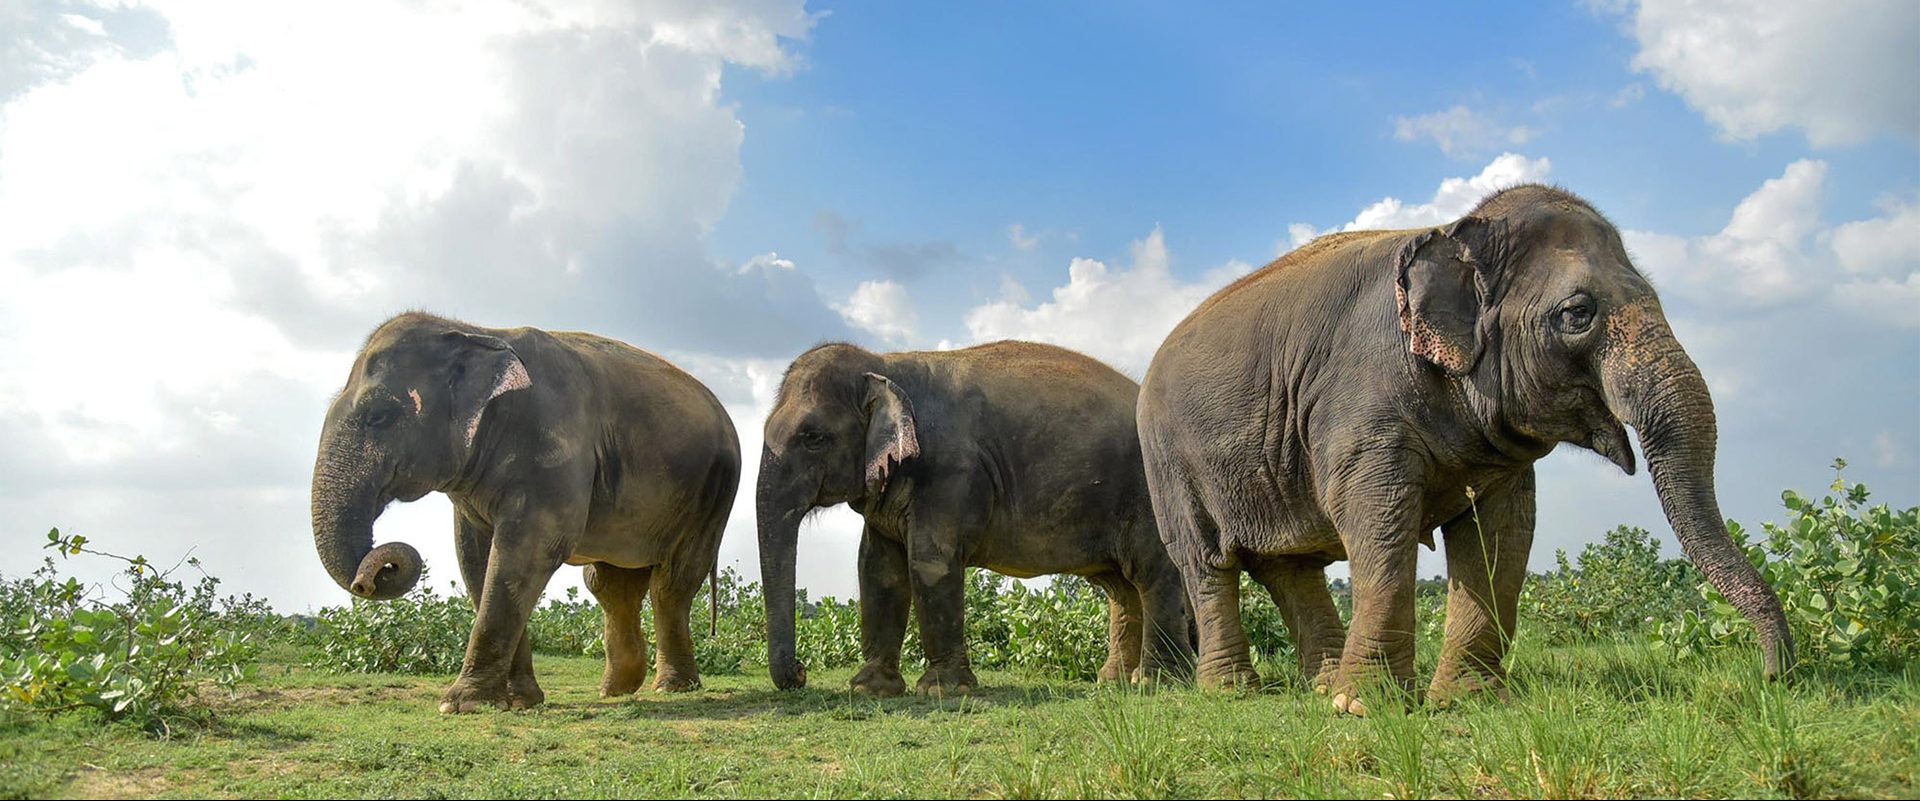 Elephants - Wildlife SOS